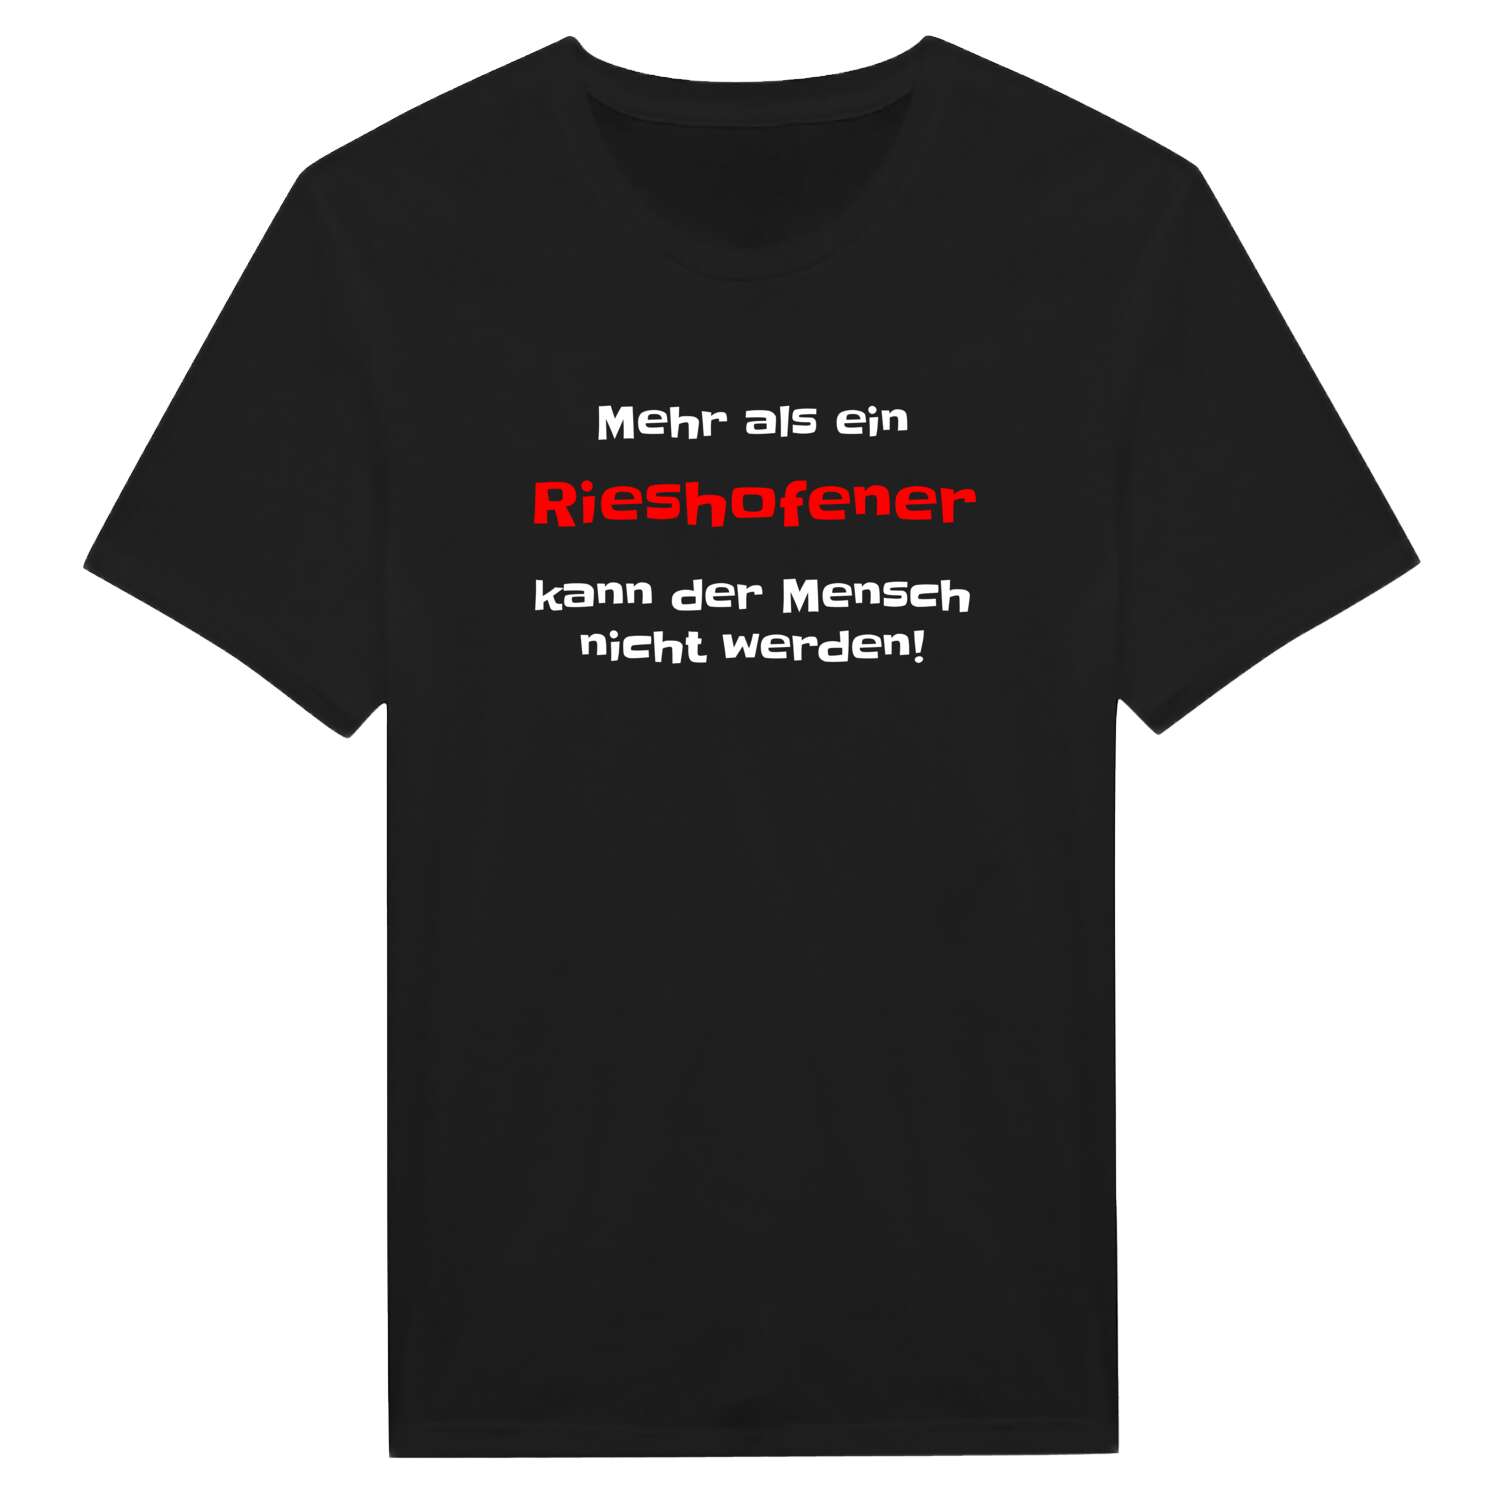 Rieshofen T-Shirt »Mehr als ein«